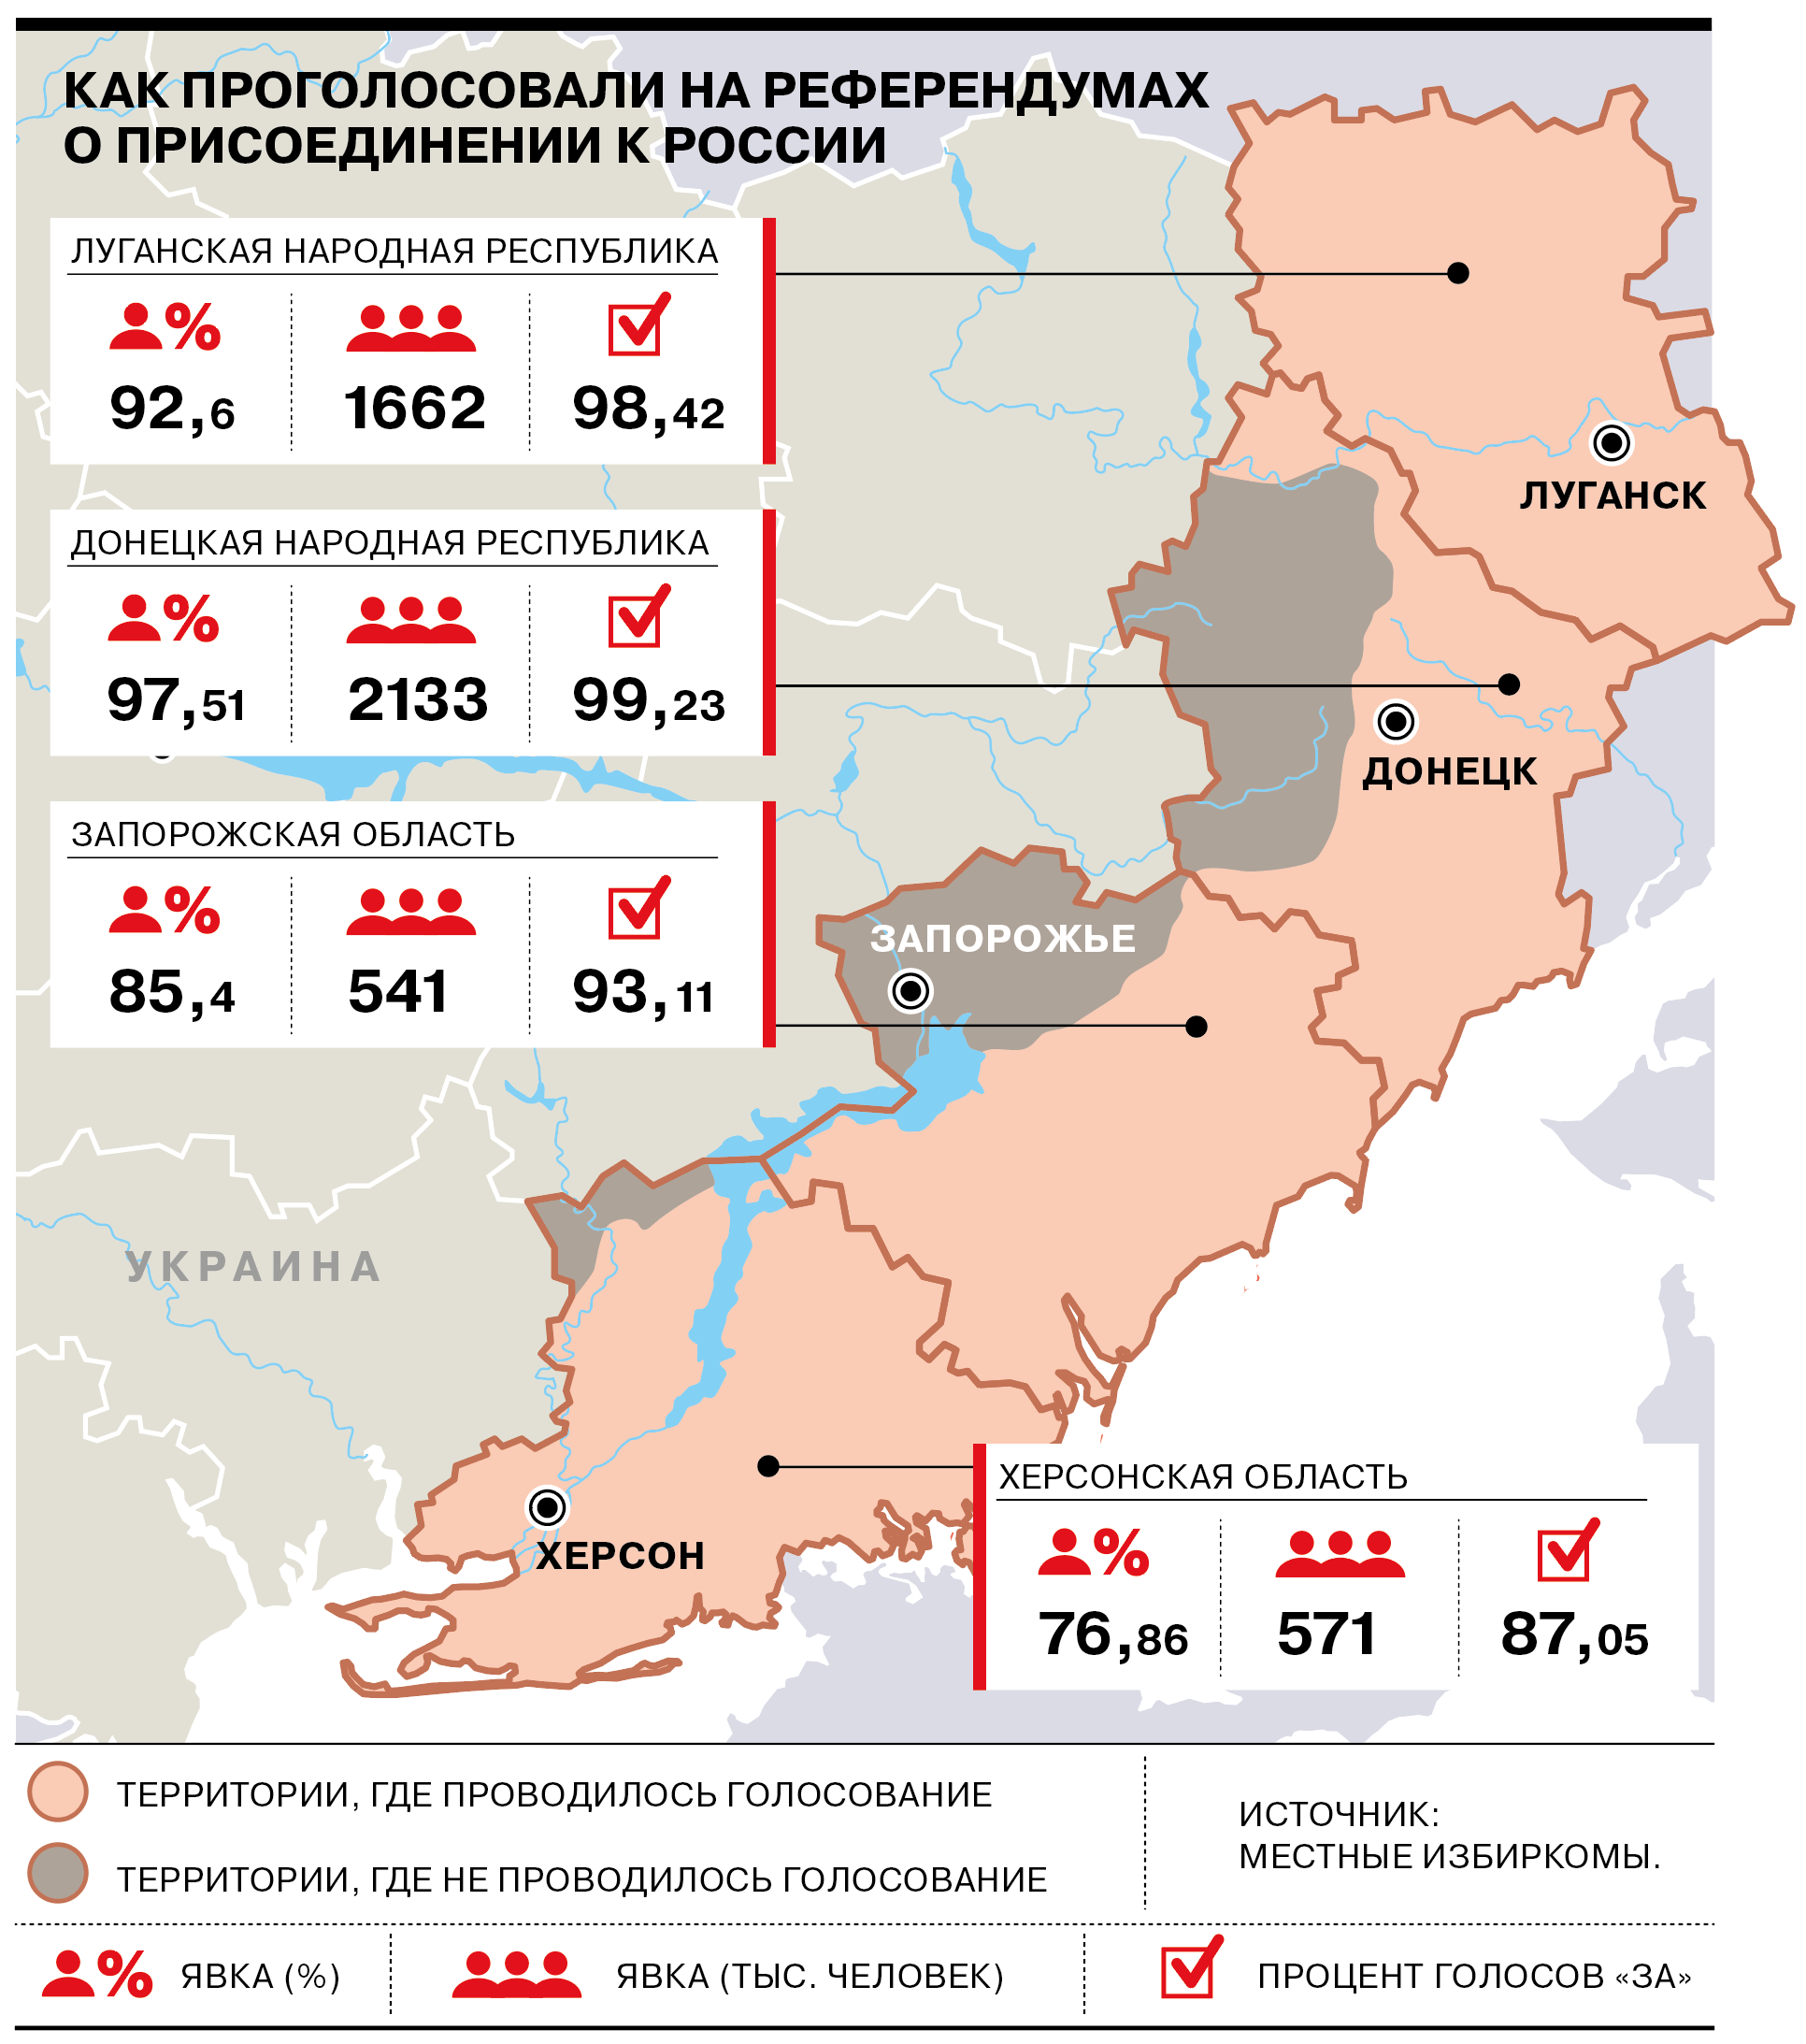 Результаты референдумов о присоединении к России: какие цифры назвали избиркомы